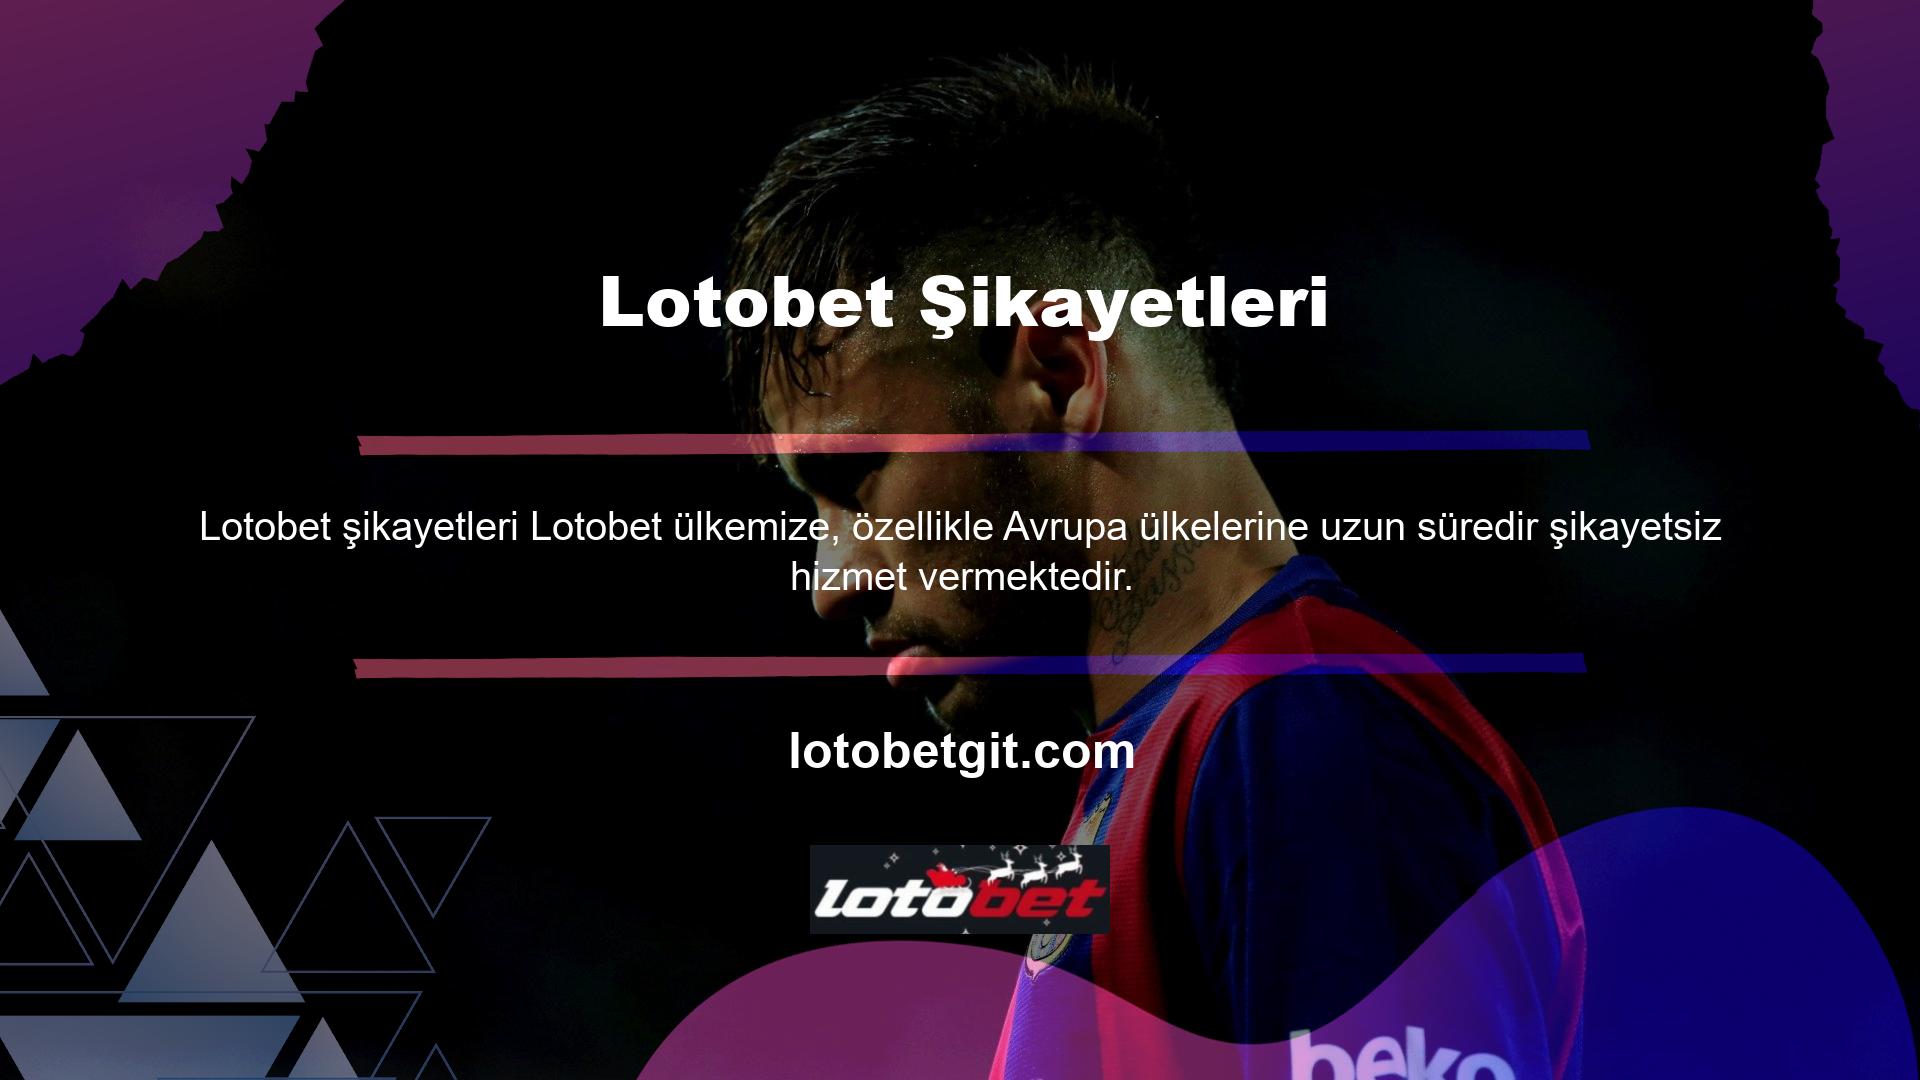 Lotobet şikayeti soruşturmasına geçmeden önce kontrol edilmesi gereken ilk konu Lotobet internet sitesinin lisansıdır